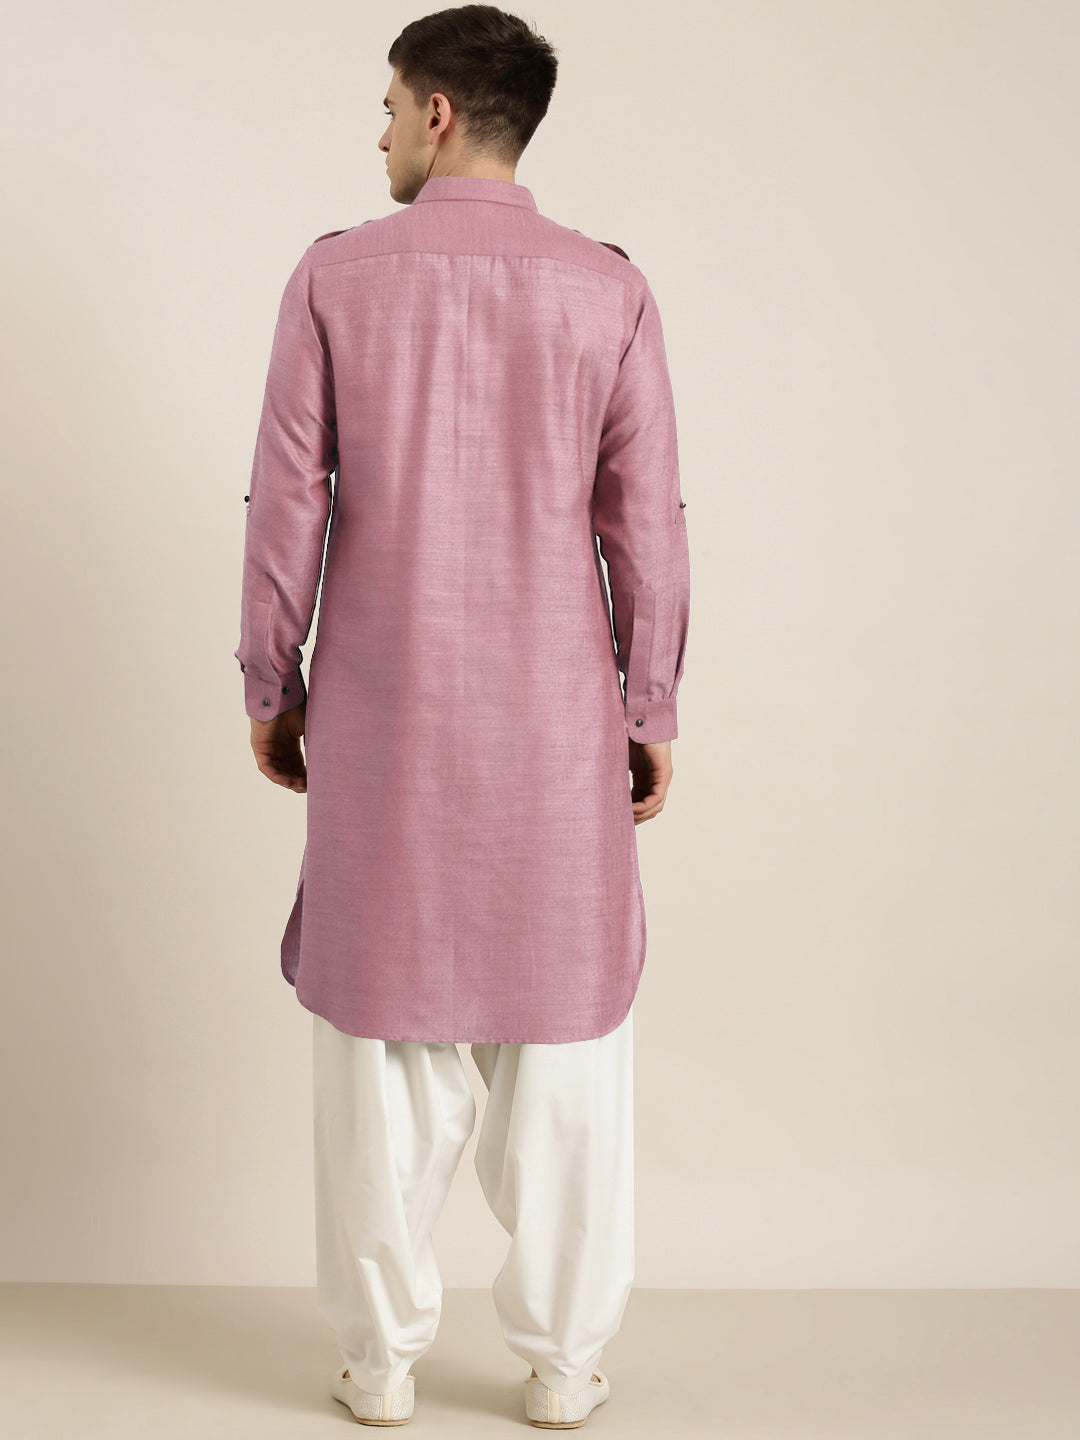 Rose Pink Cotton Pathani with Salwar